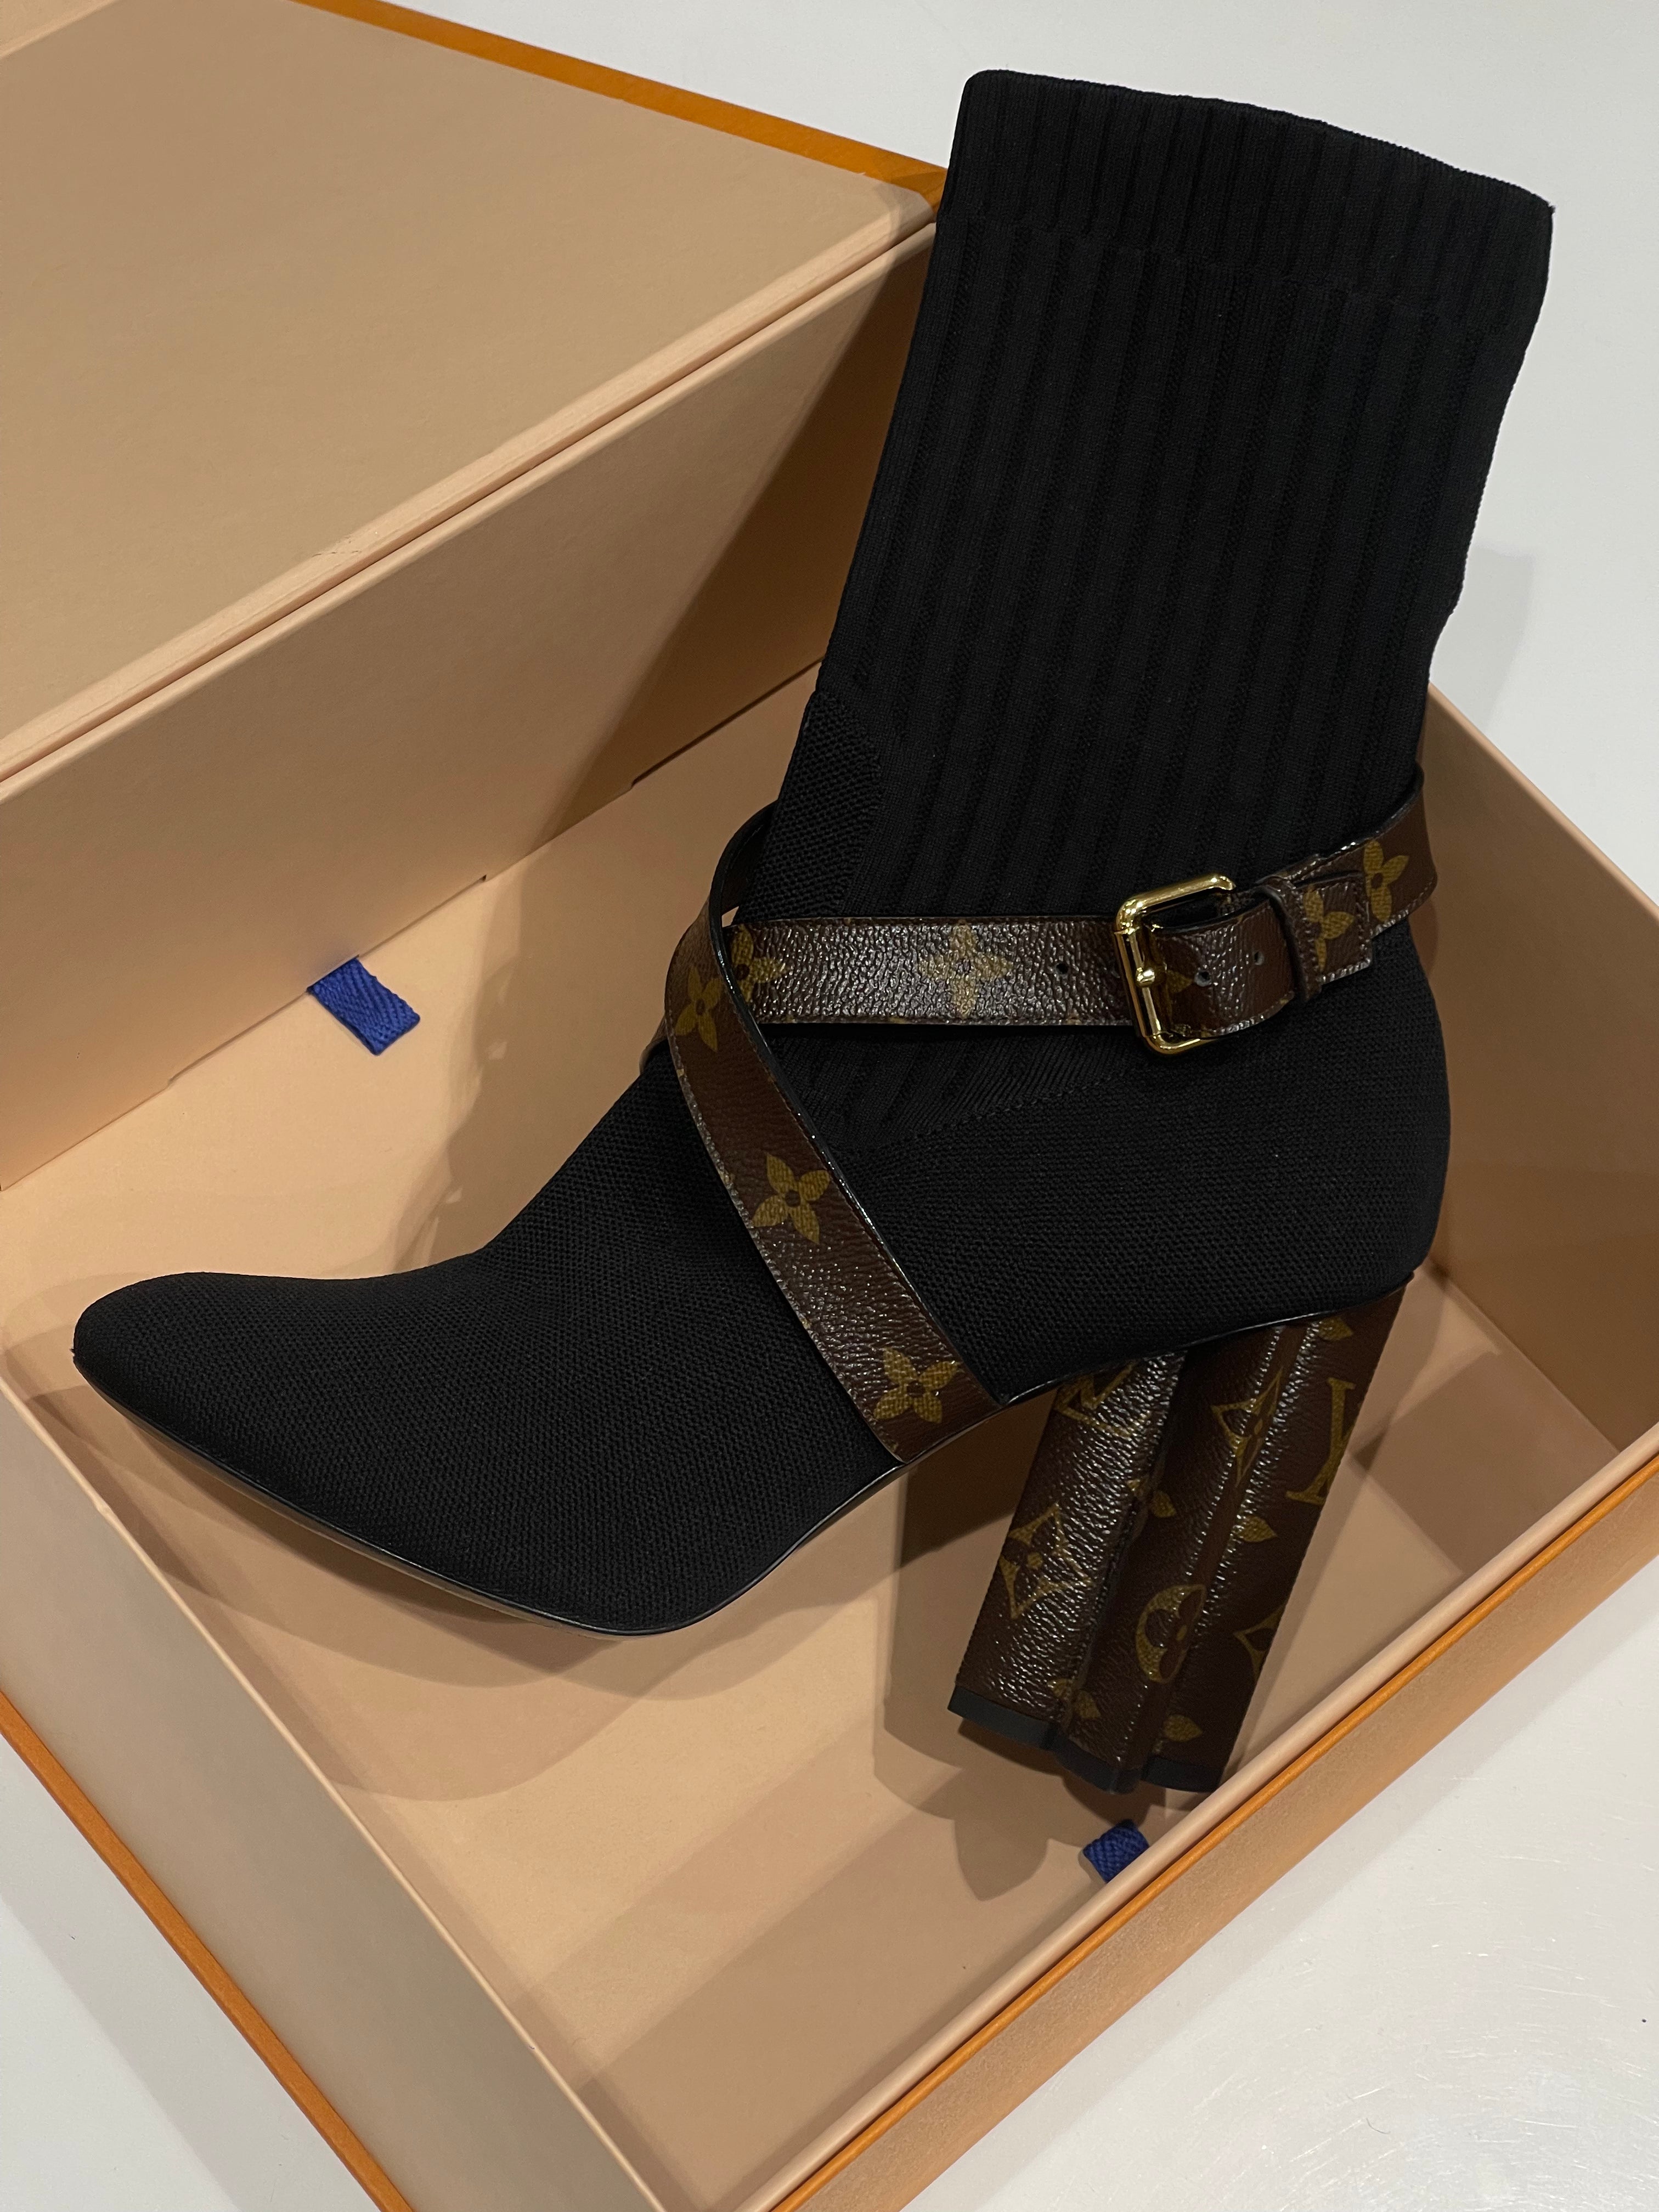 Louis Vuitton - T40 袜套踝靴